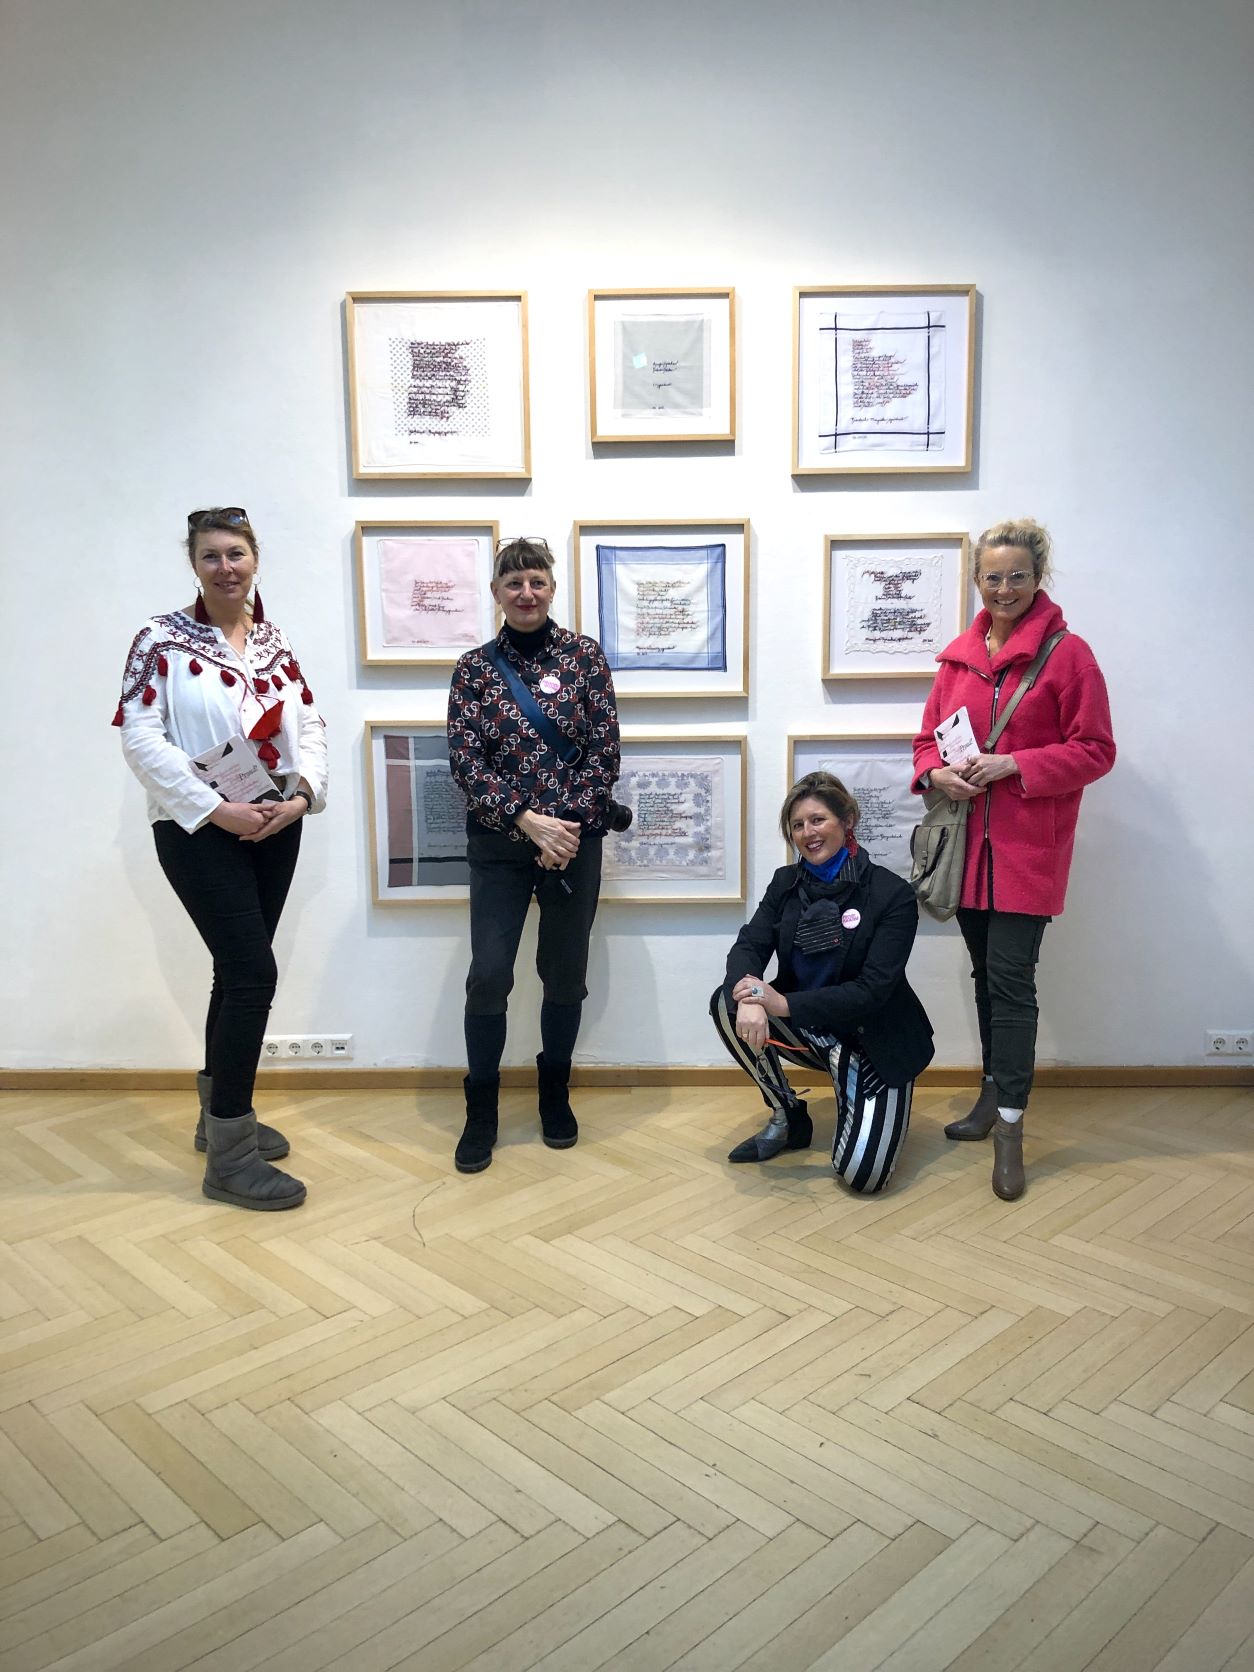 von links: Irene, Sabine Groschup – unsere Patenkünstlerin, Ina Loitzl – Kuratorin der Ausstellung, Marion.